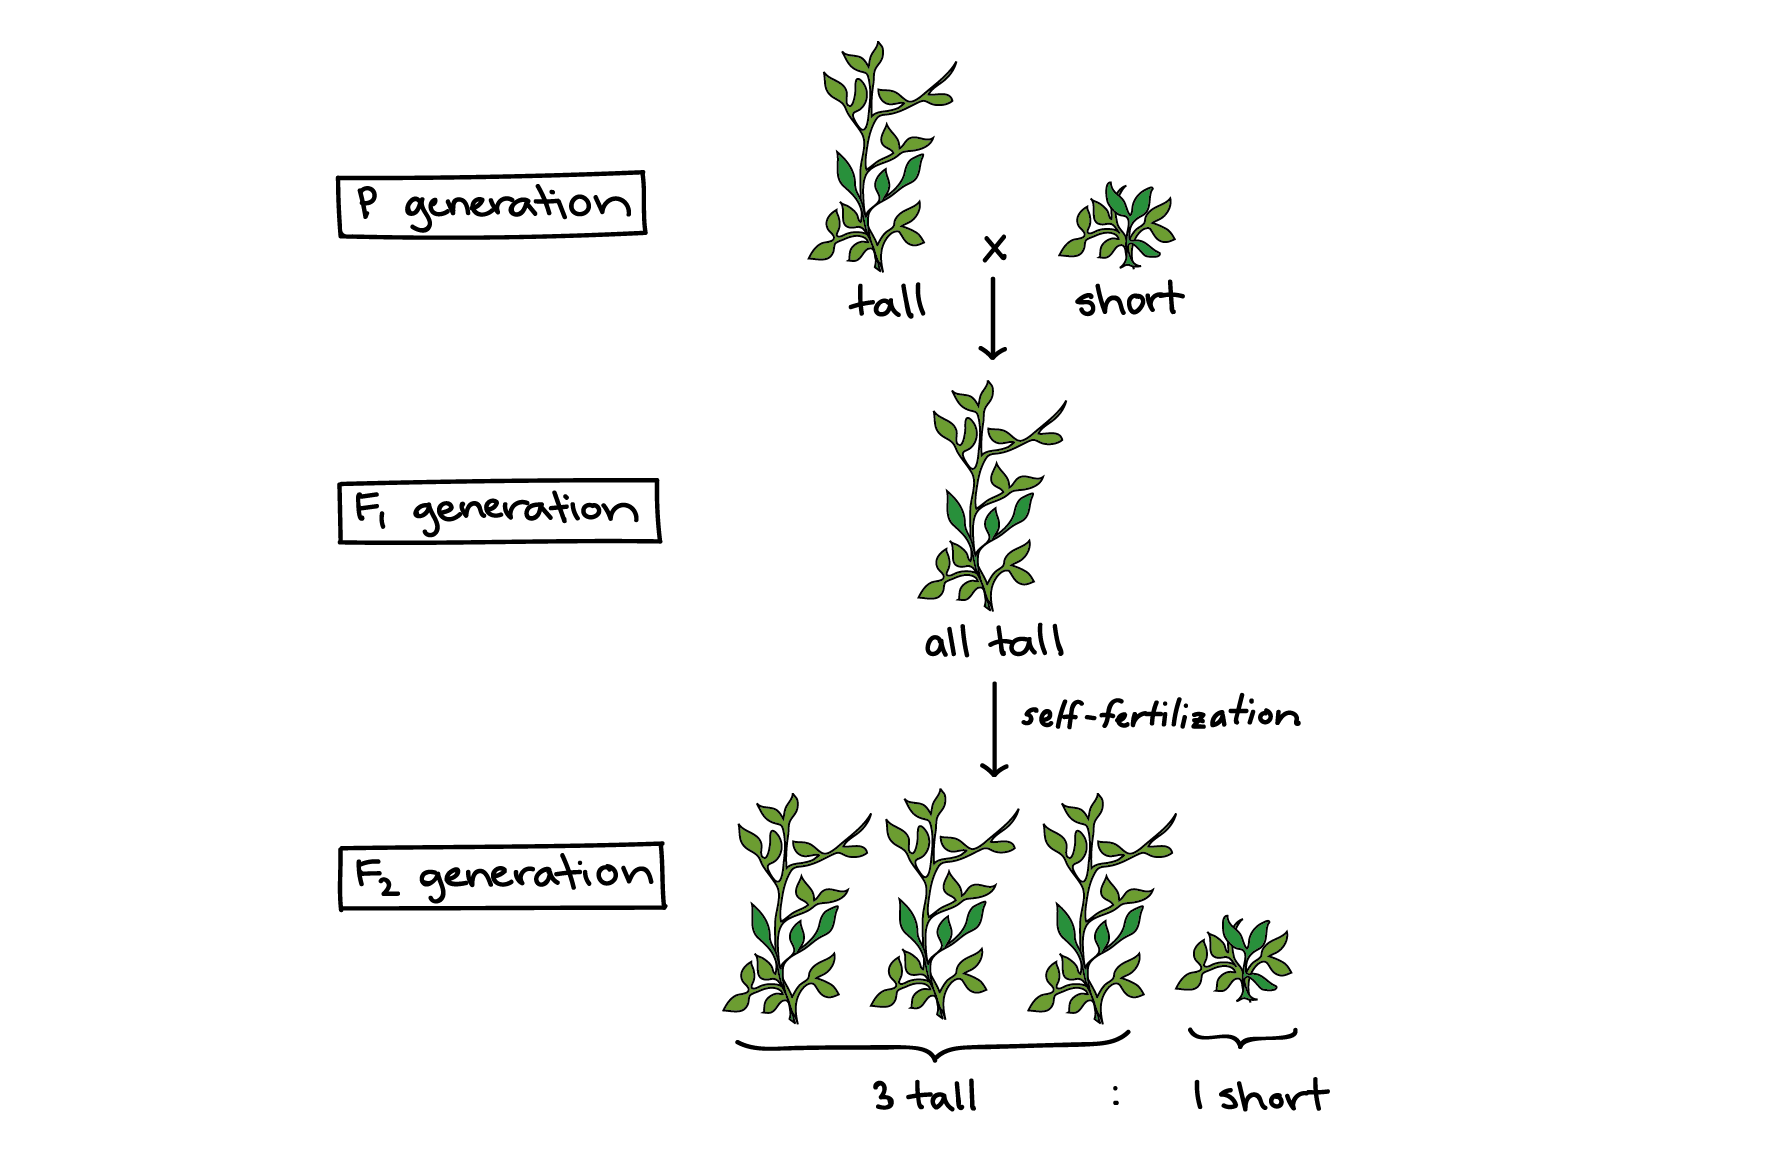 Diagrama de un cruce entre una planta alta y una planta corta, etiquetando las generaciones P, F1 y F2.